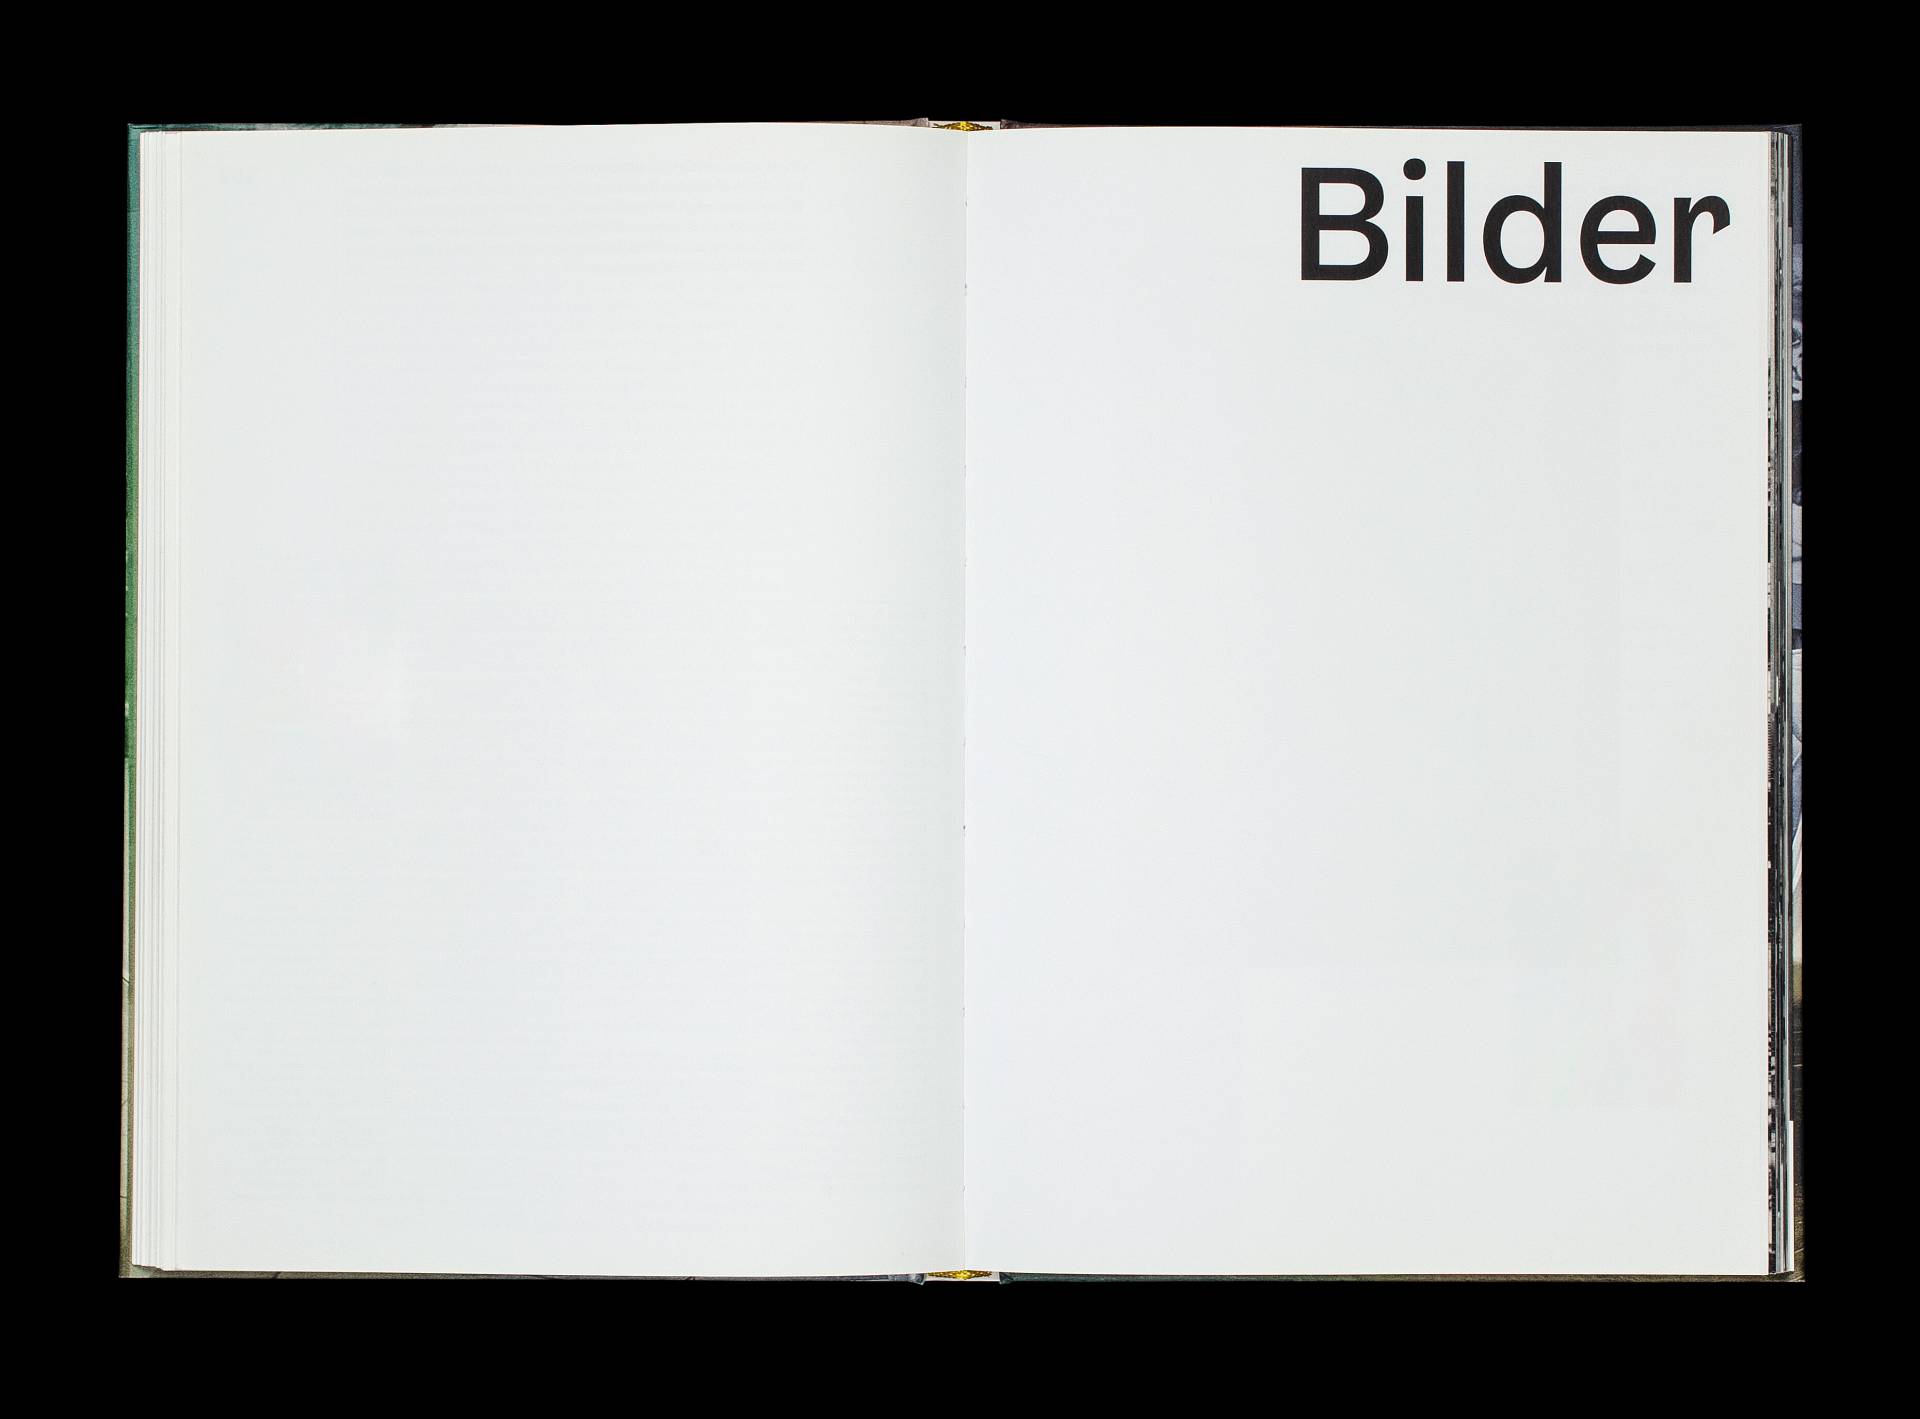 Publikation »Schaufensterkultur – Inszenierte Warenwelt in Basel« für den Christoph Merian Verlag, Basel